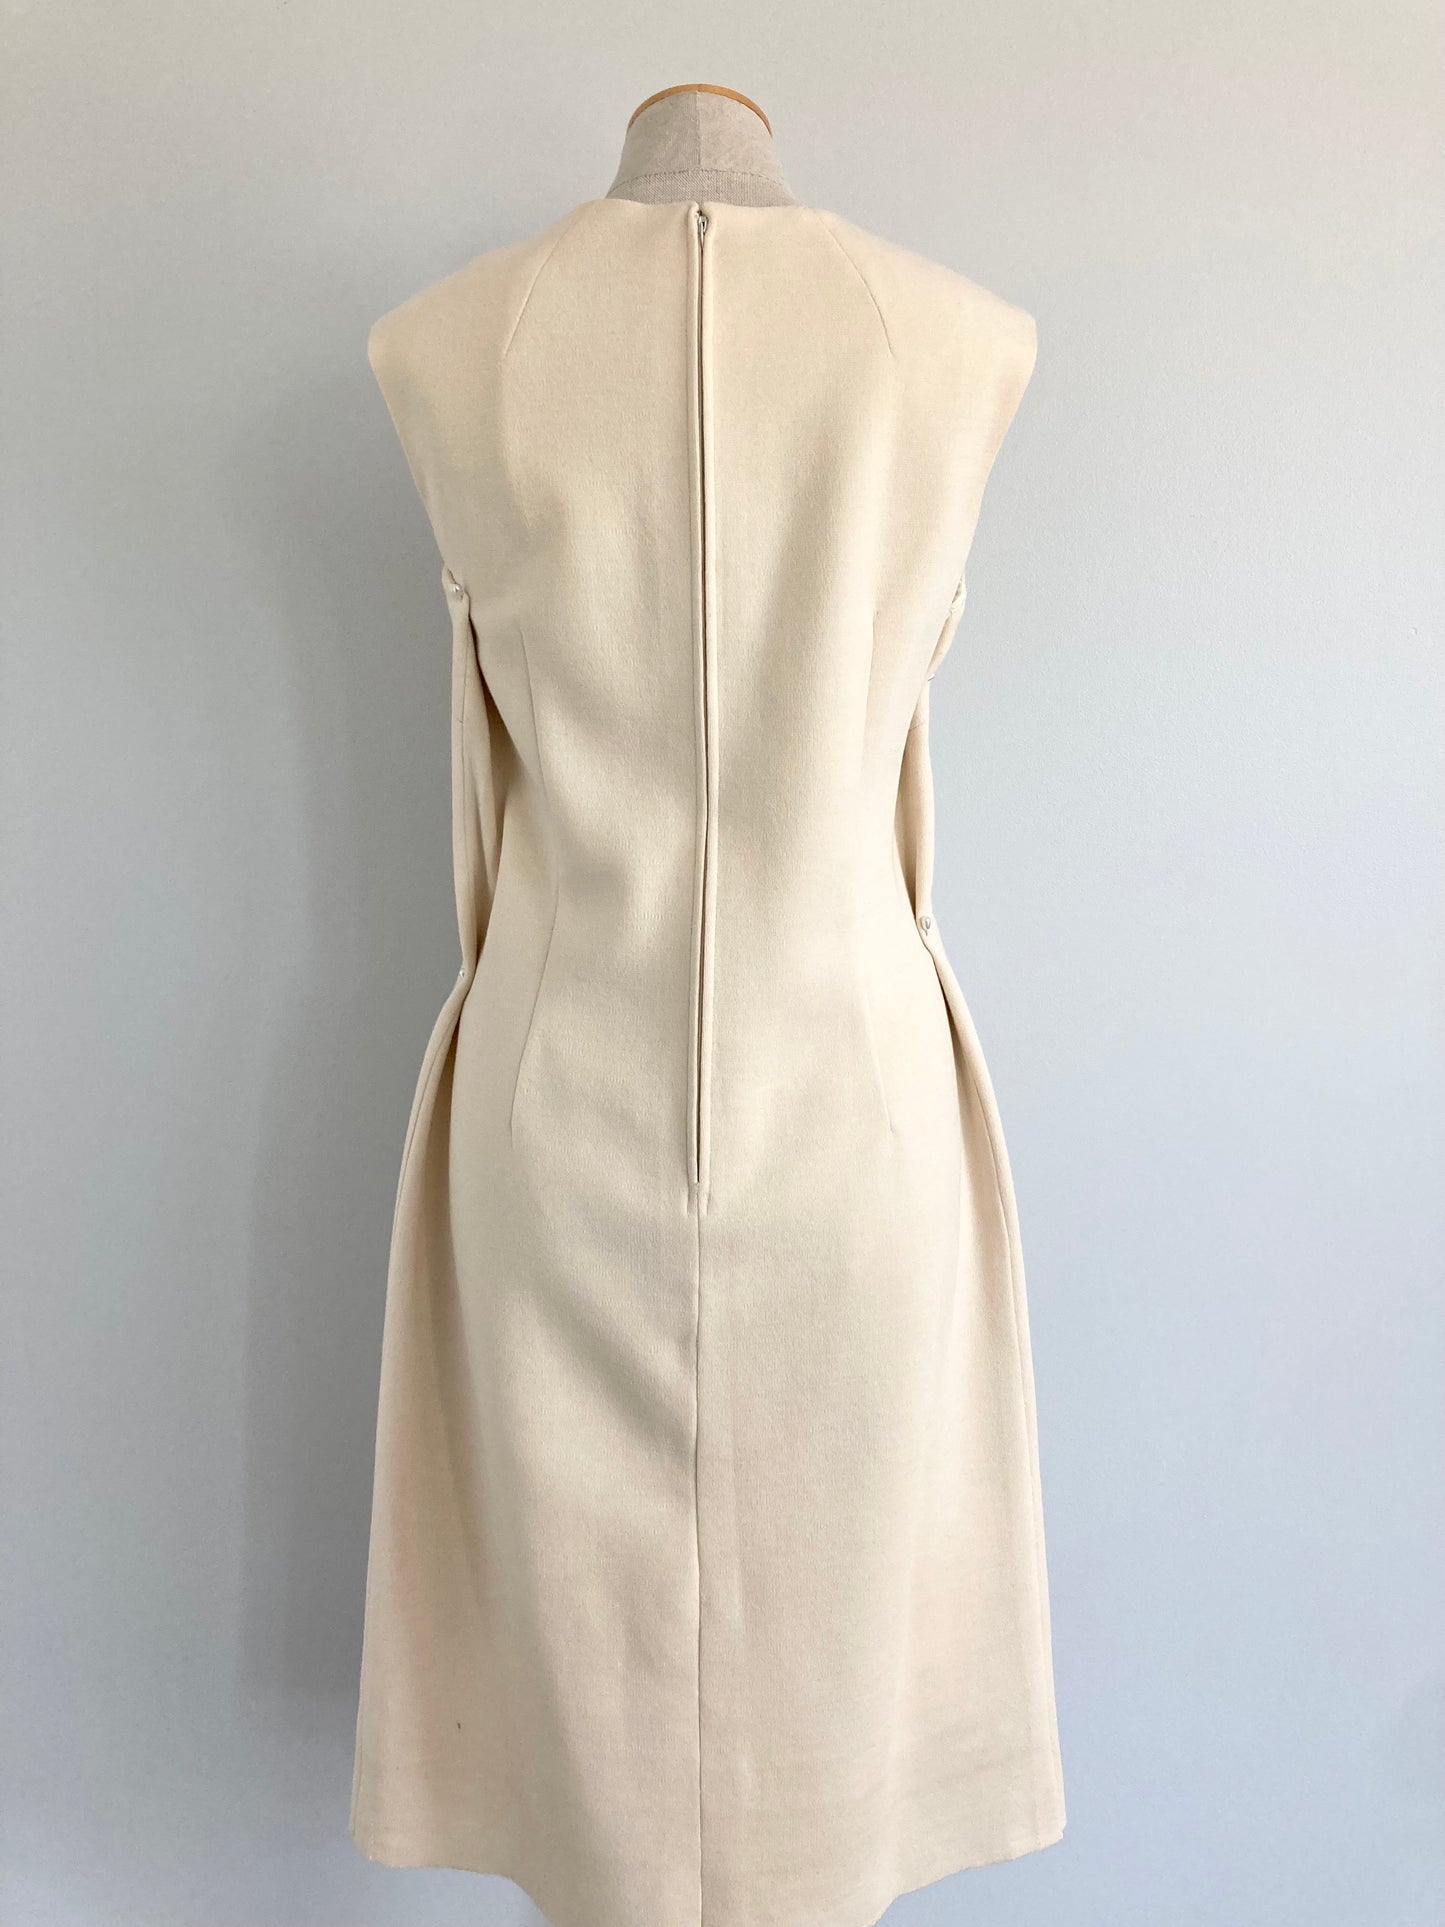 1960s Lilli Ann Dress Suit, Size M/L